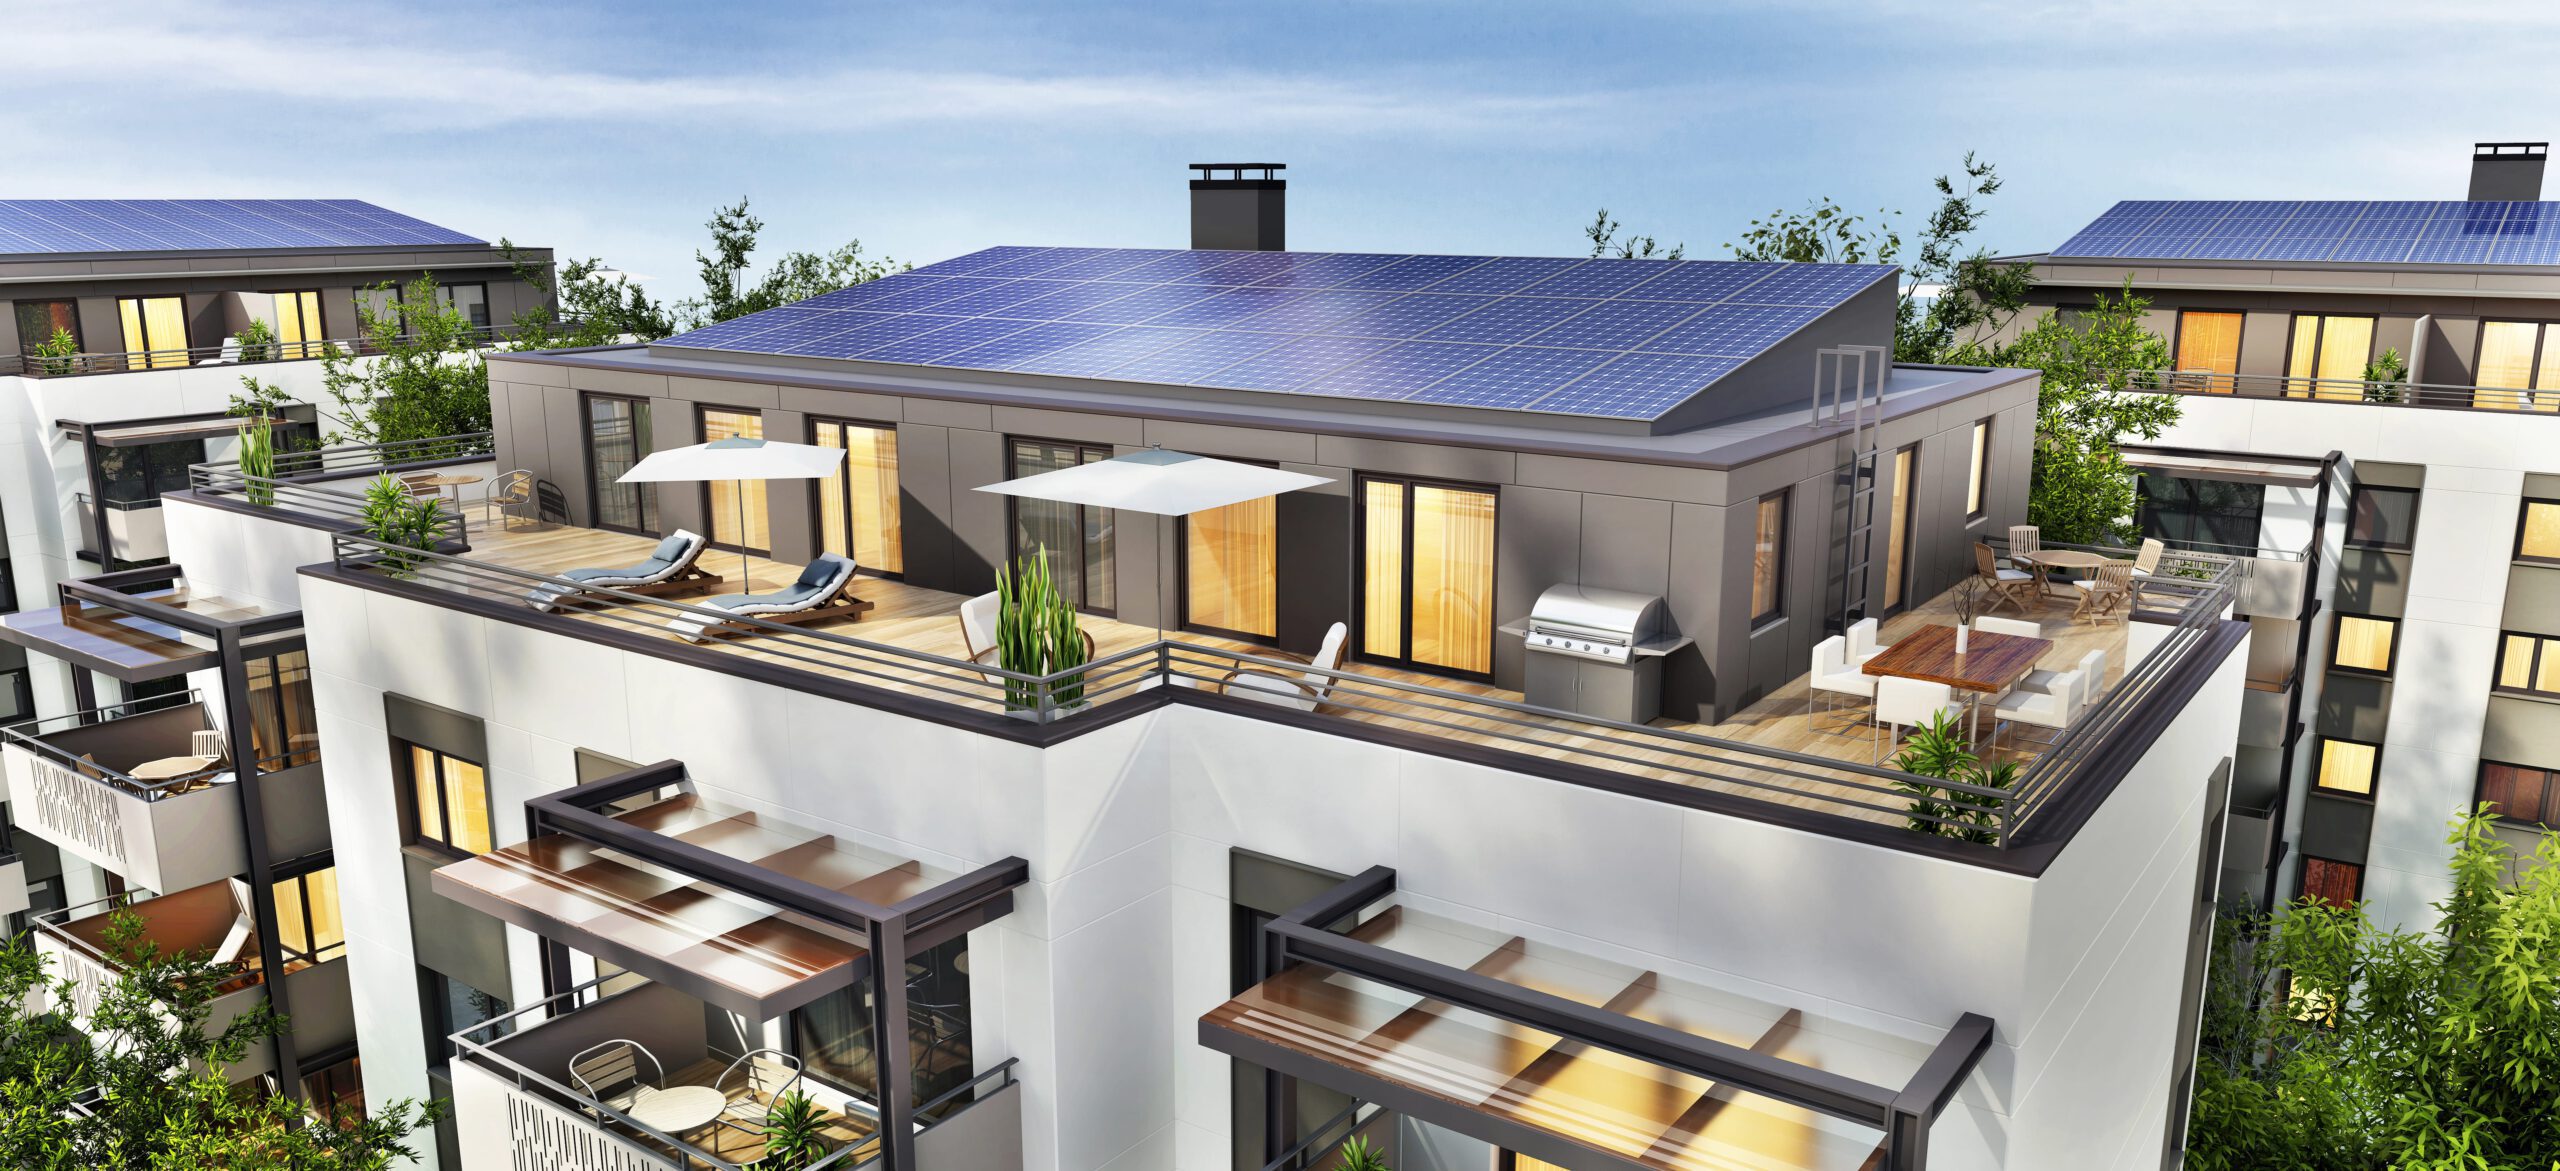 Mehrfamilienhaus mit Balkon und Sonnenkollektoren auf dem Dach